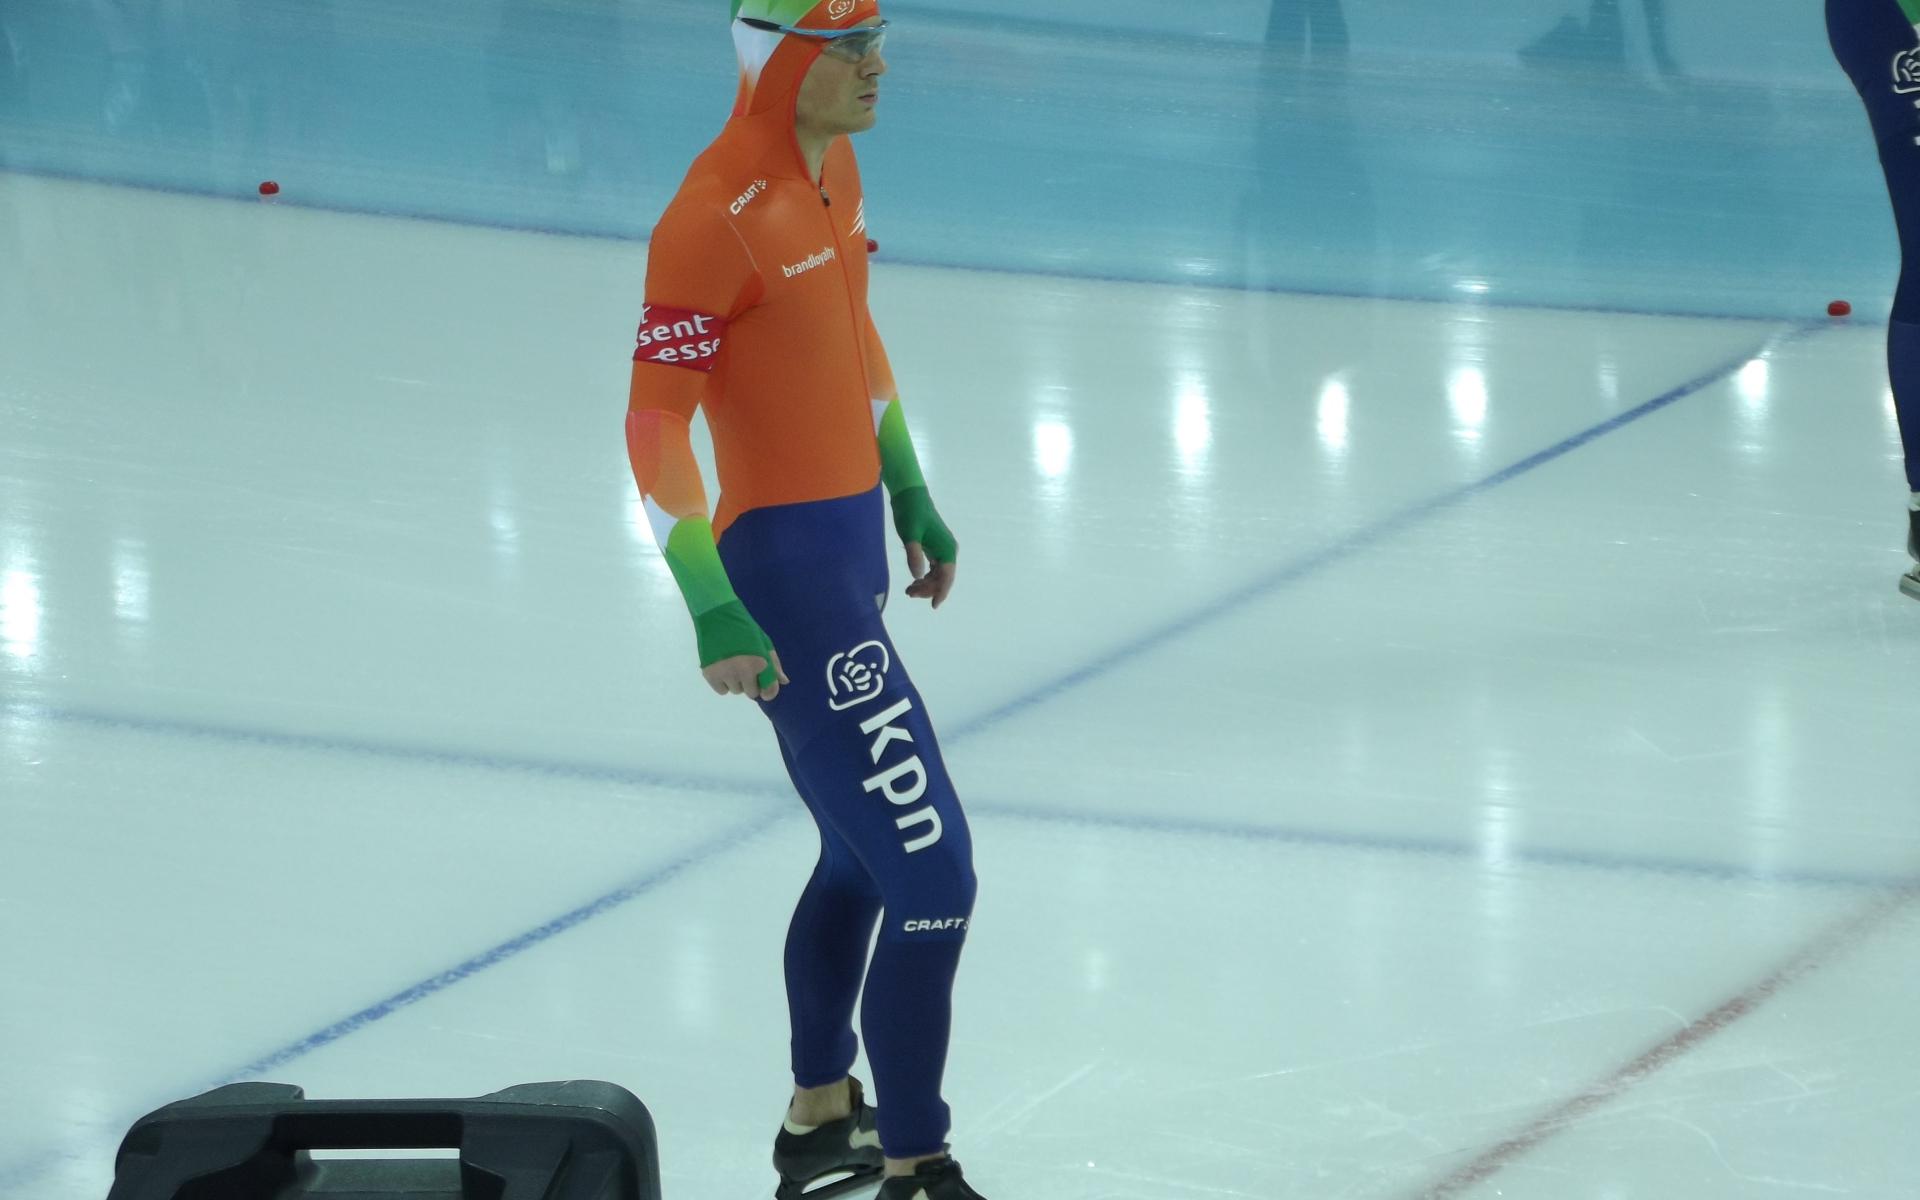 Ян Смеекенс голландский конькобежец обладатель серебряной медали в Сочи